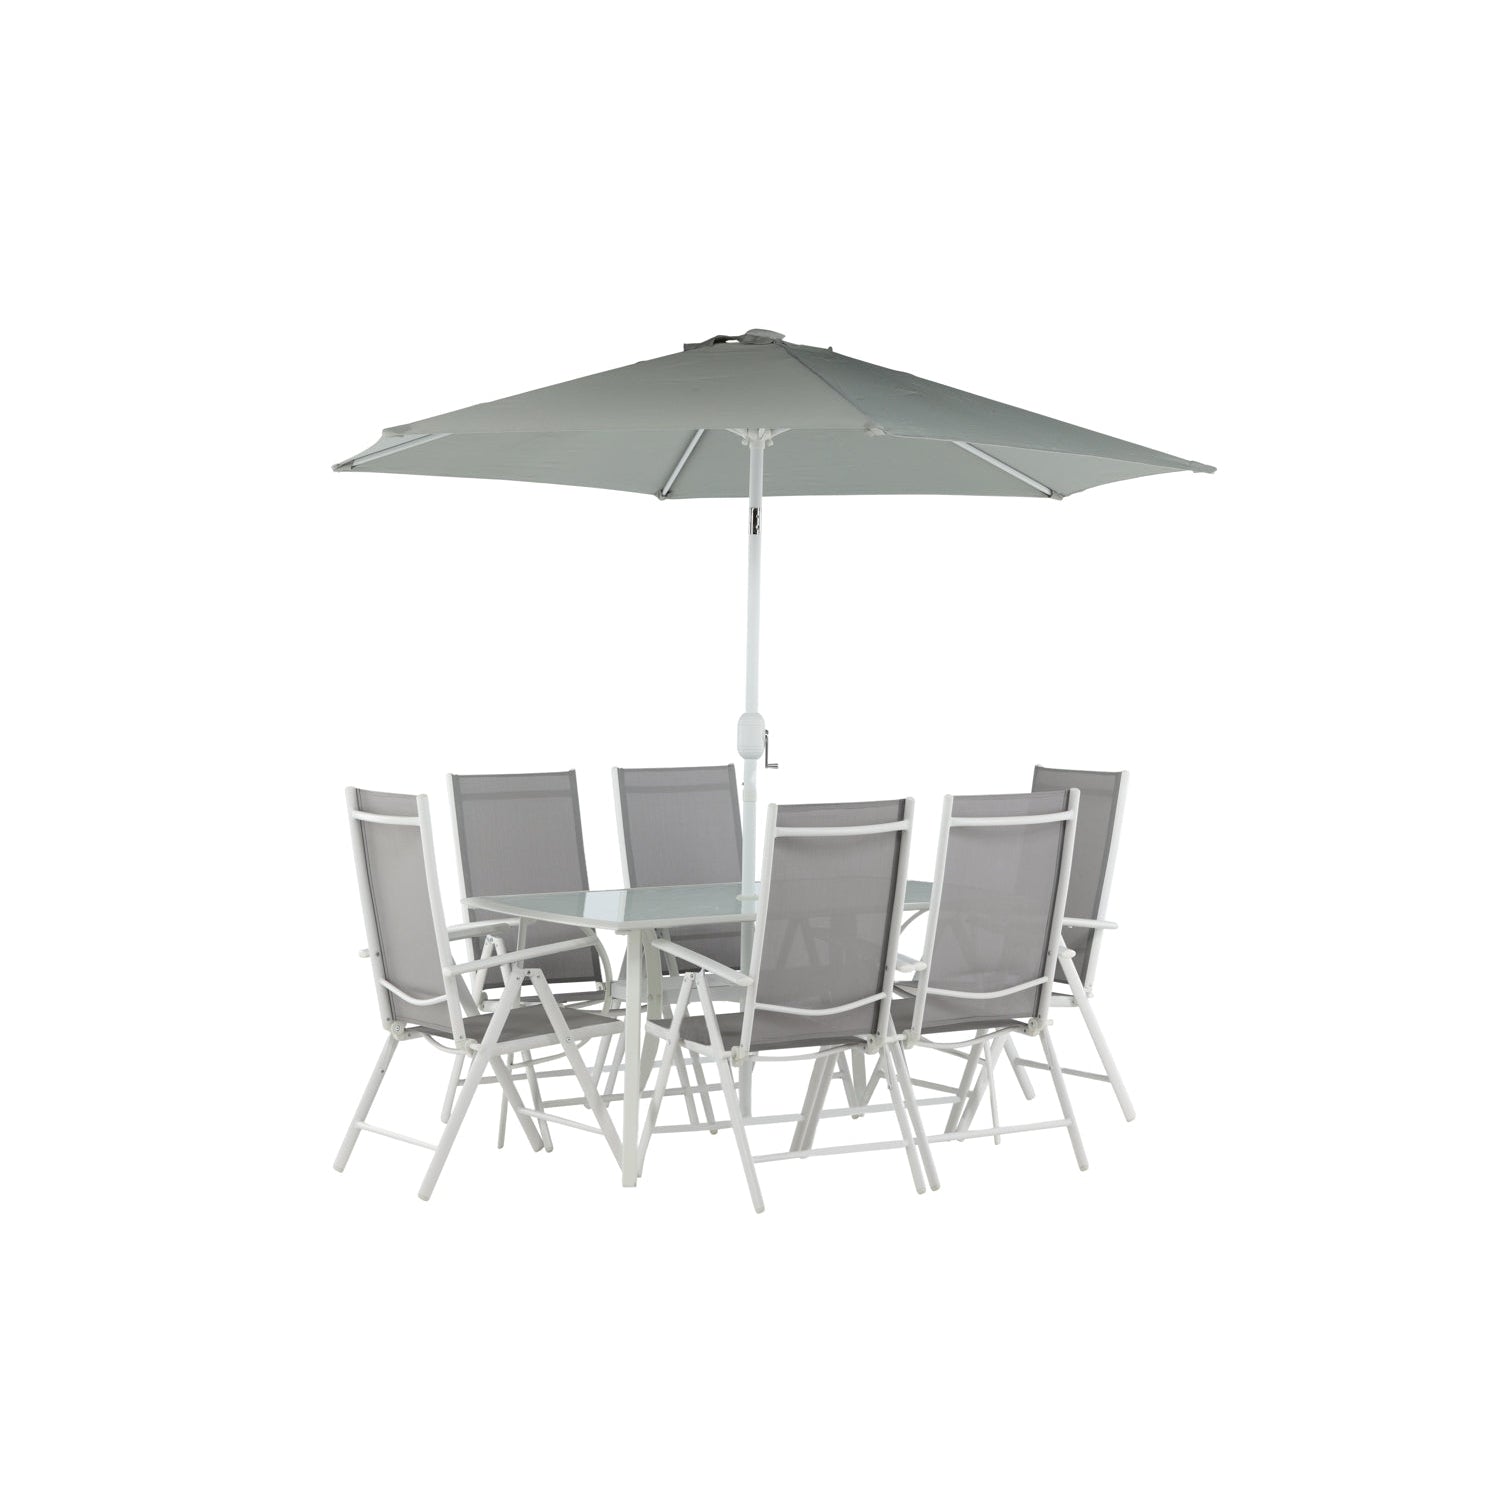 BREKKI Matbord 150x90 cm + 6 stolar + Parasoll - Grå/Vit | Utemöbler